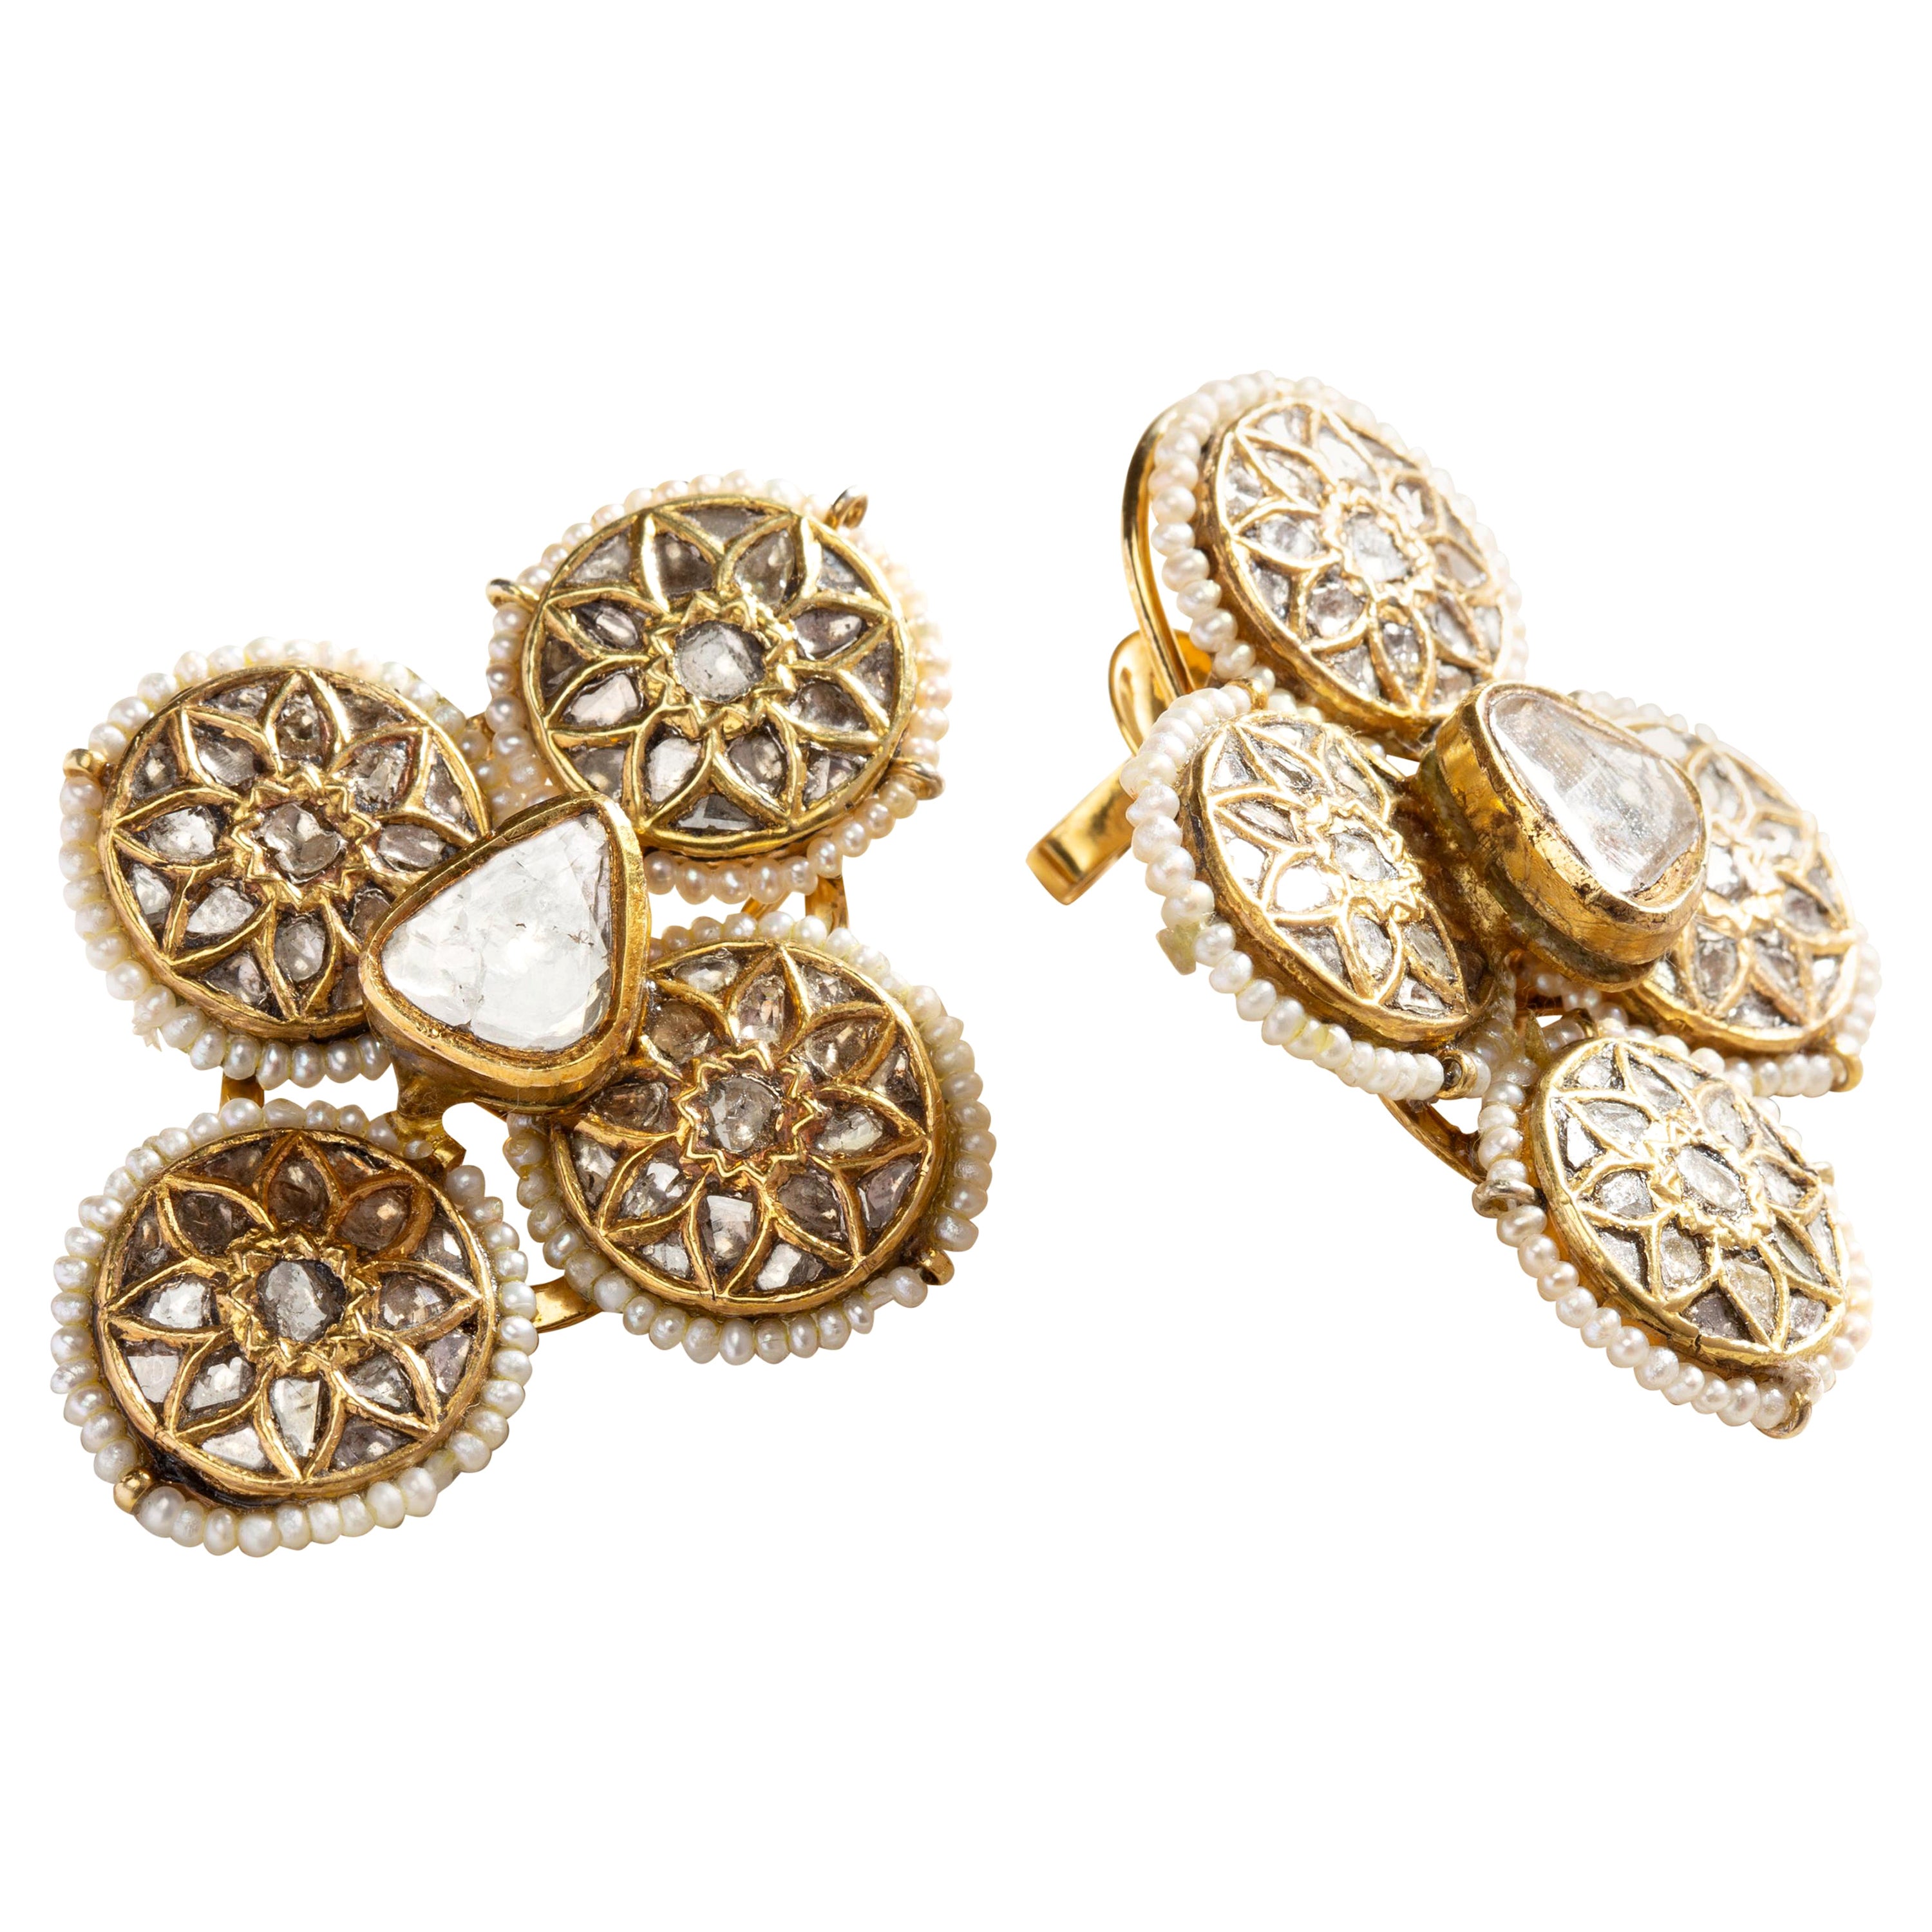 Uncut Diamond Wallflower Earrings in 22 Karat Gold For Sale at 1stDibs